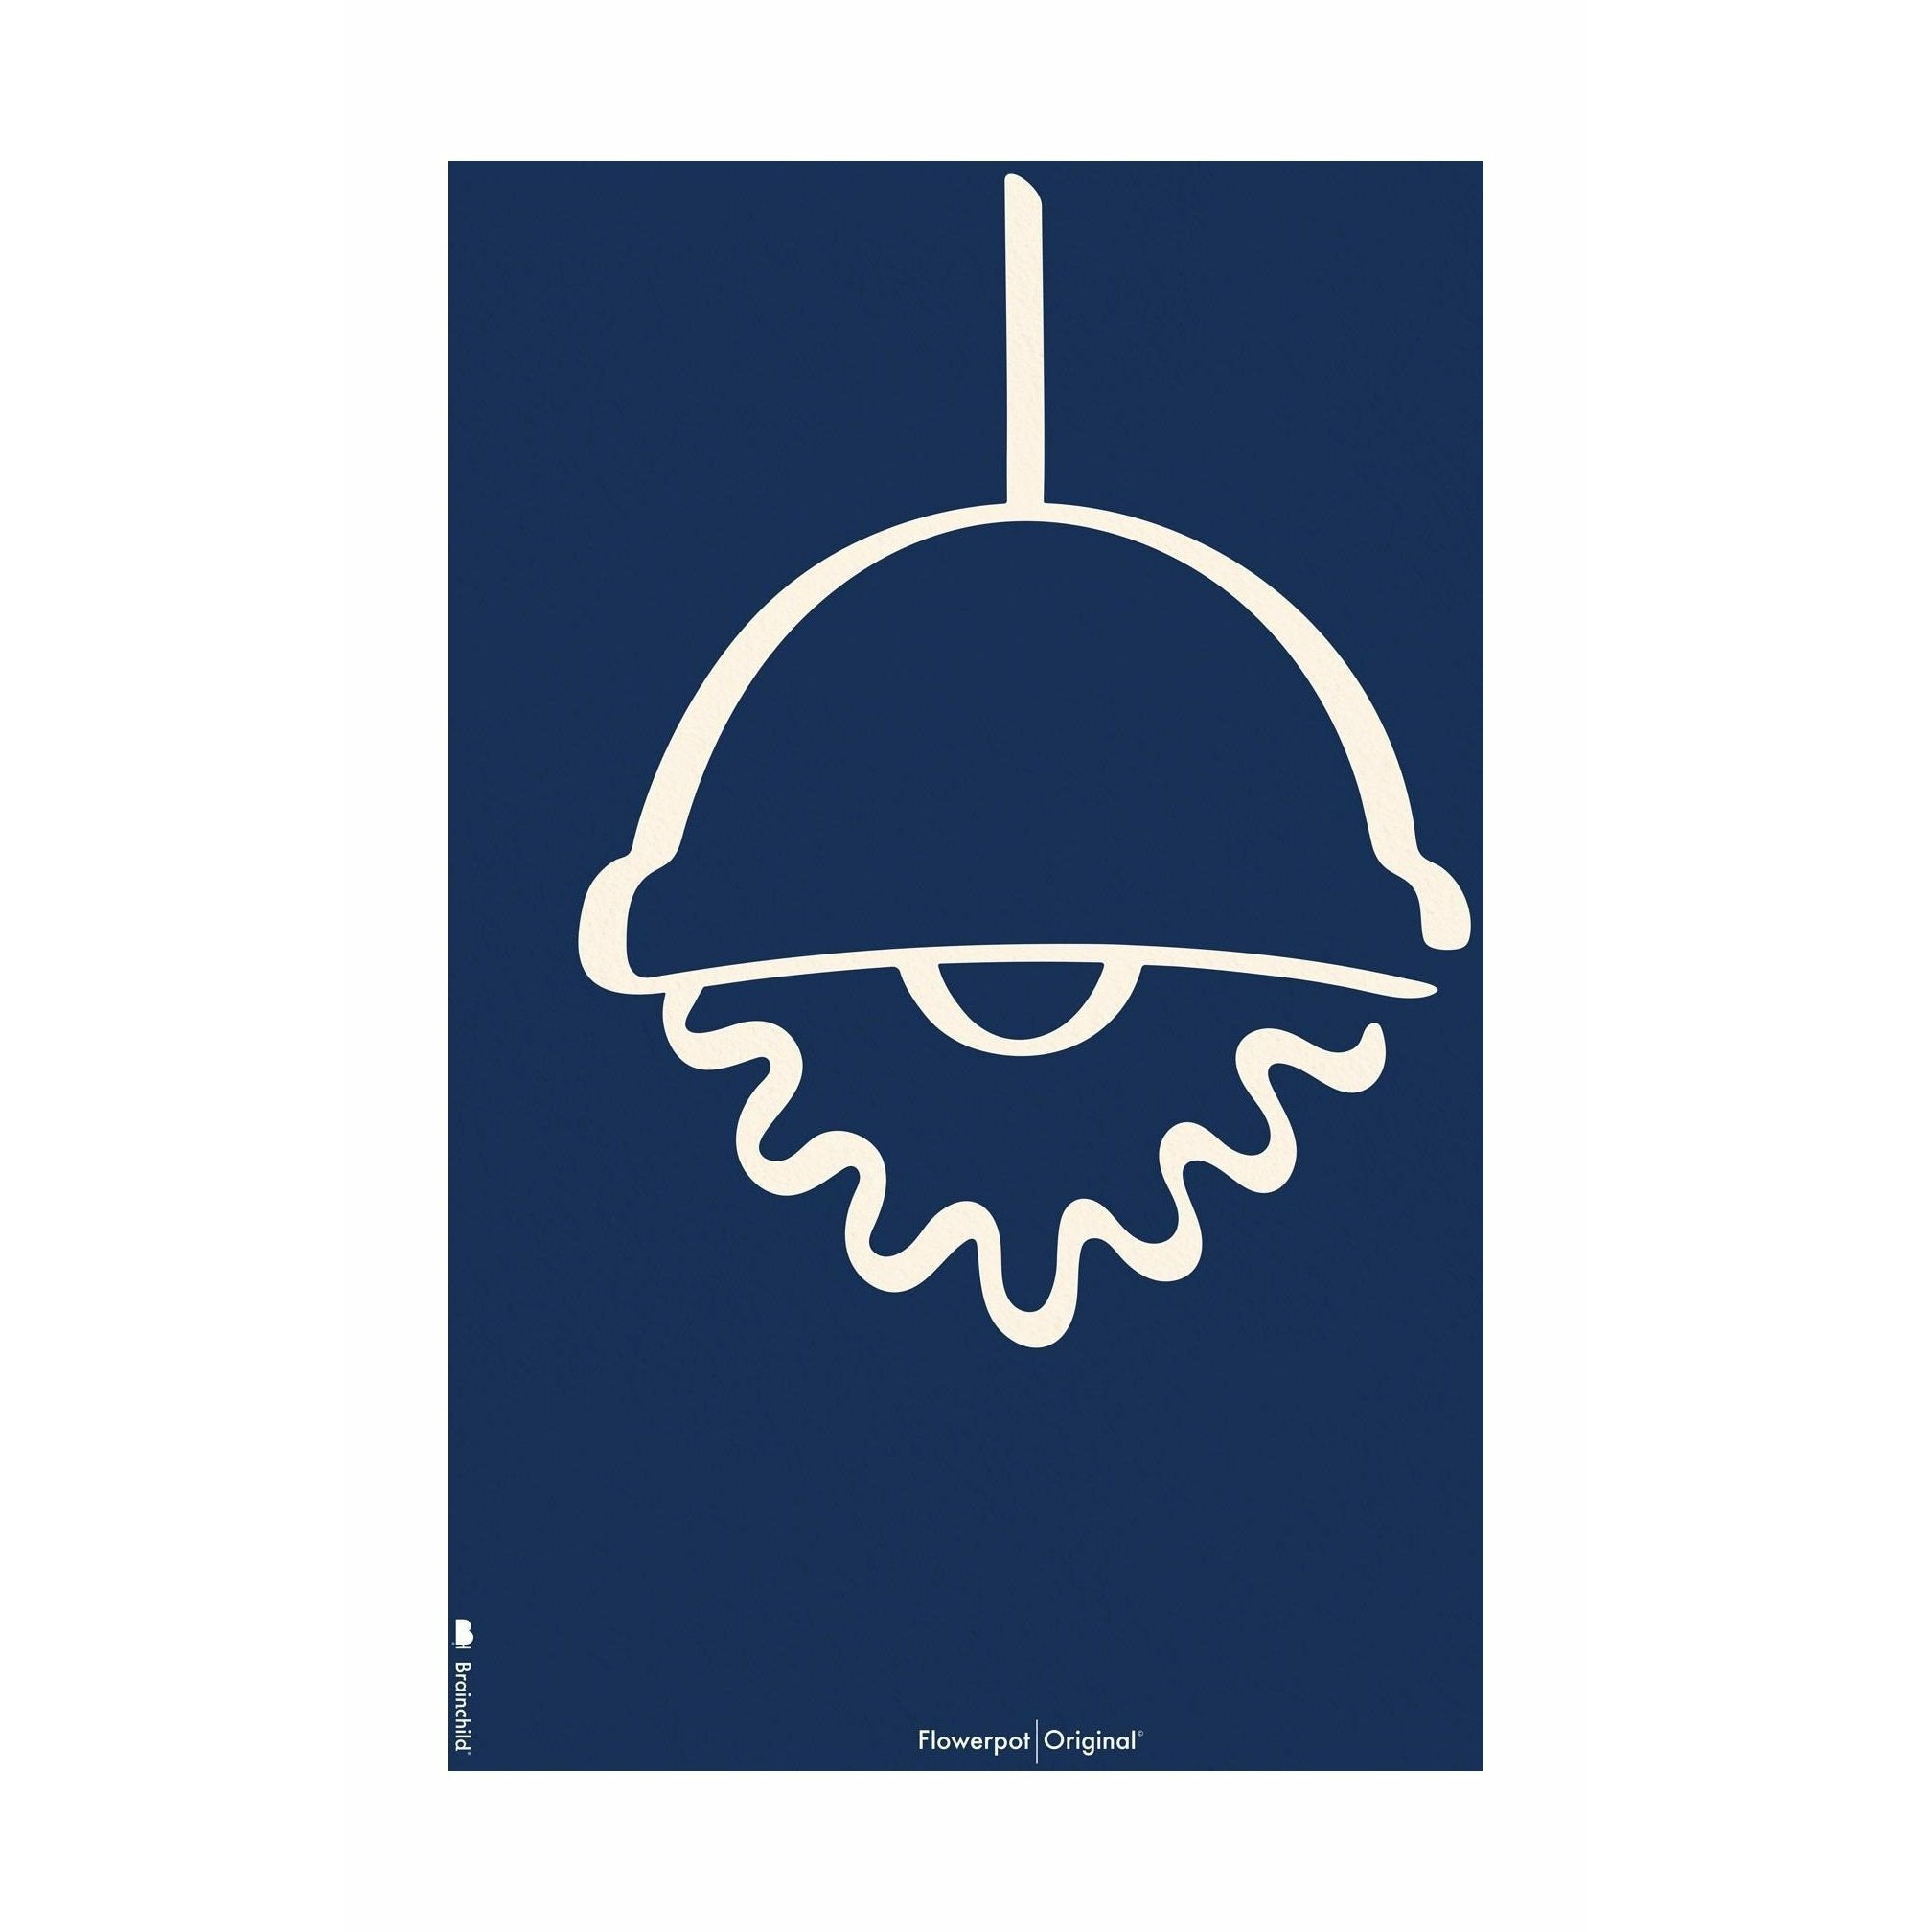 Plakát Brainchild Flowerpot Line bez rámu 70 x100 cm, modré pozadí